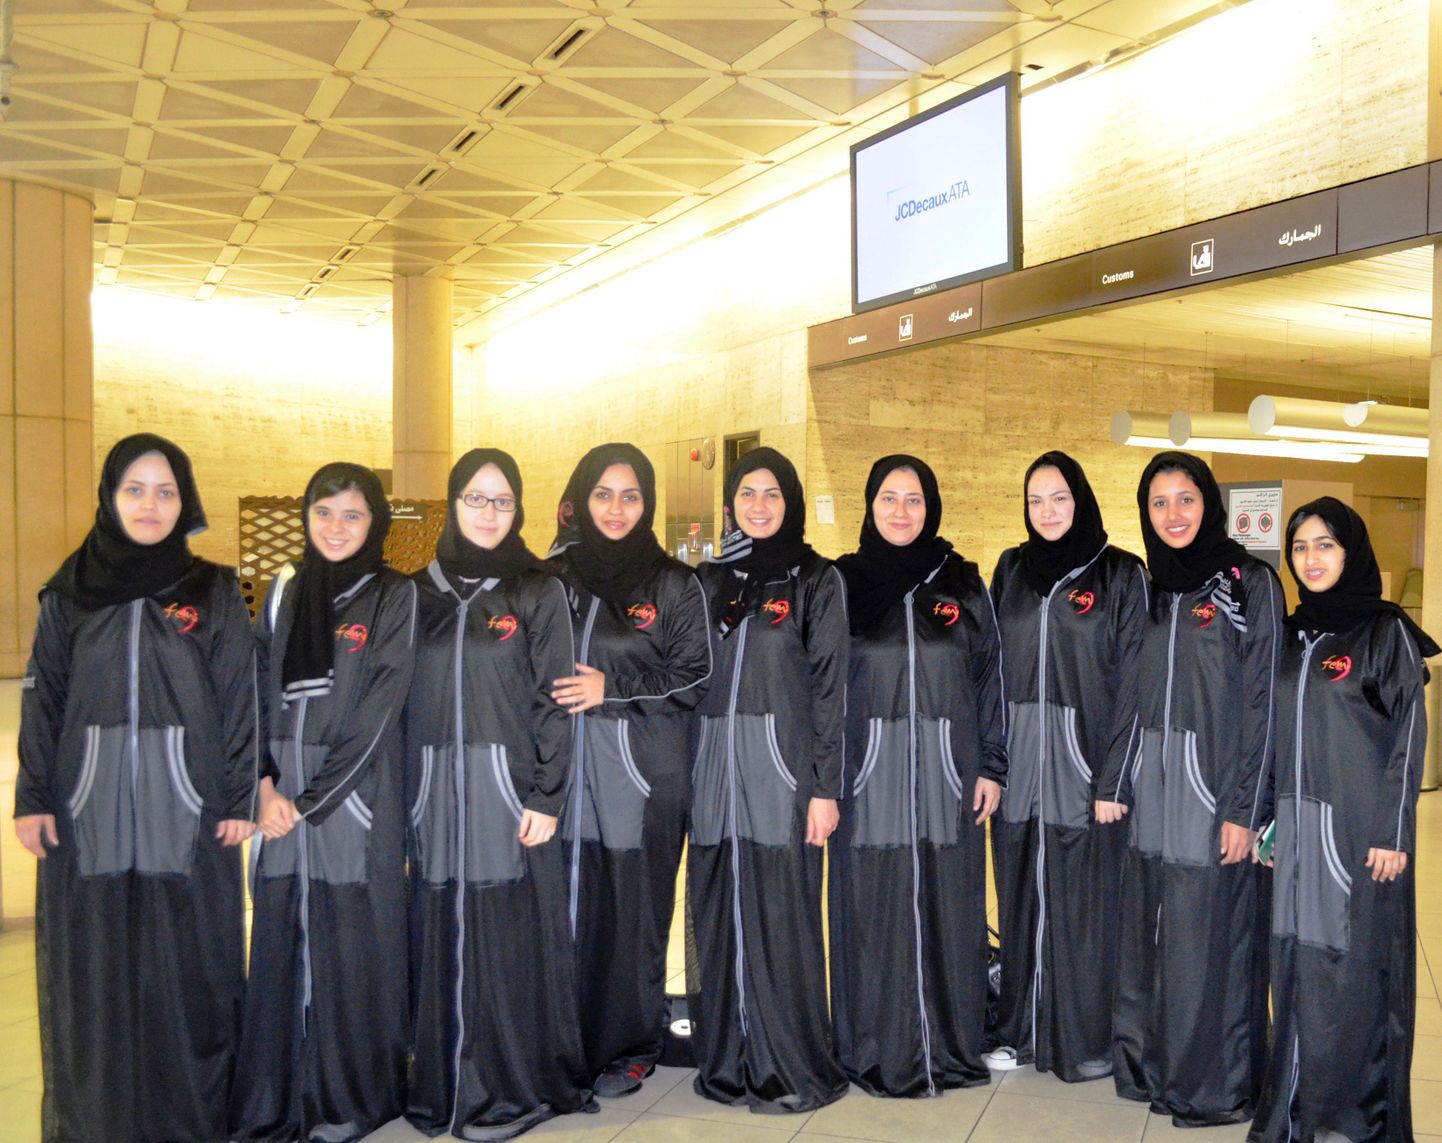 Saudi Araabia naiste korvpallivõistkond Jeddah United.